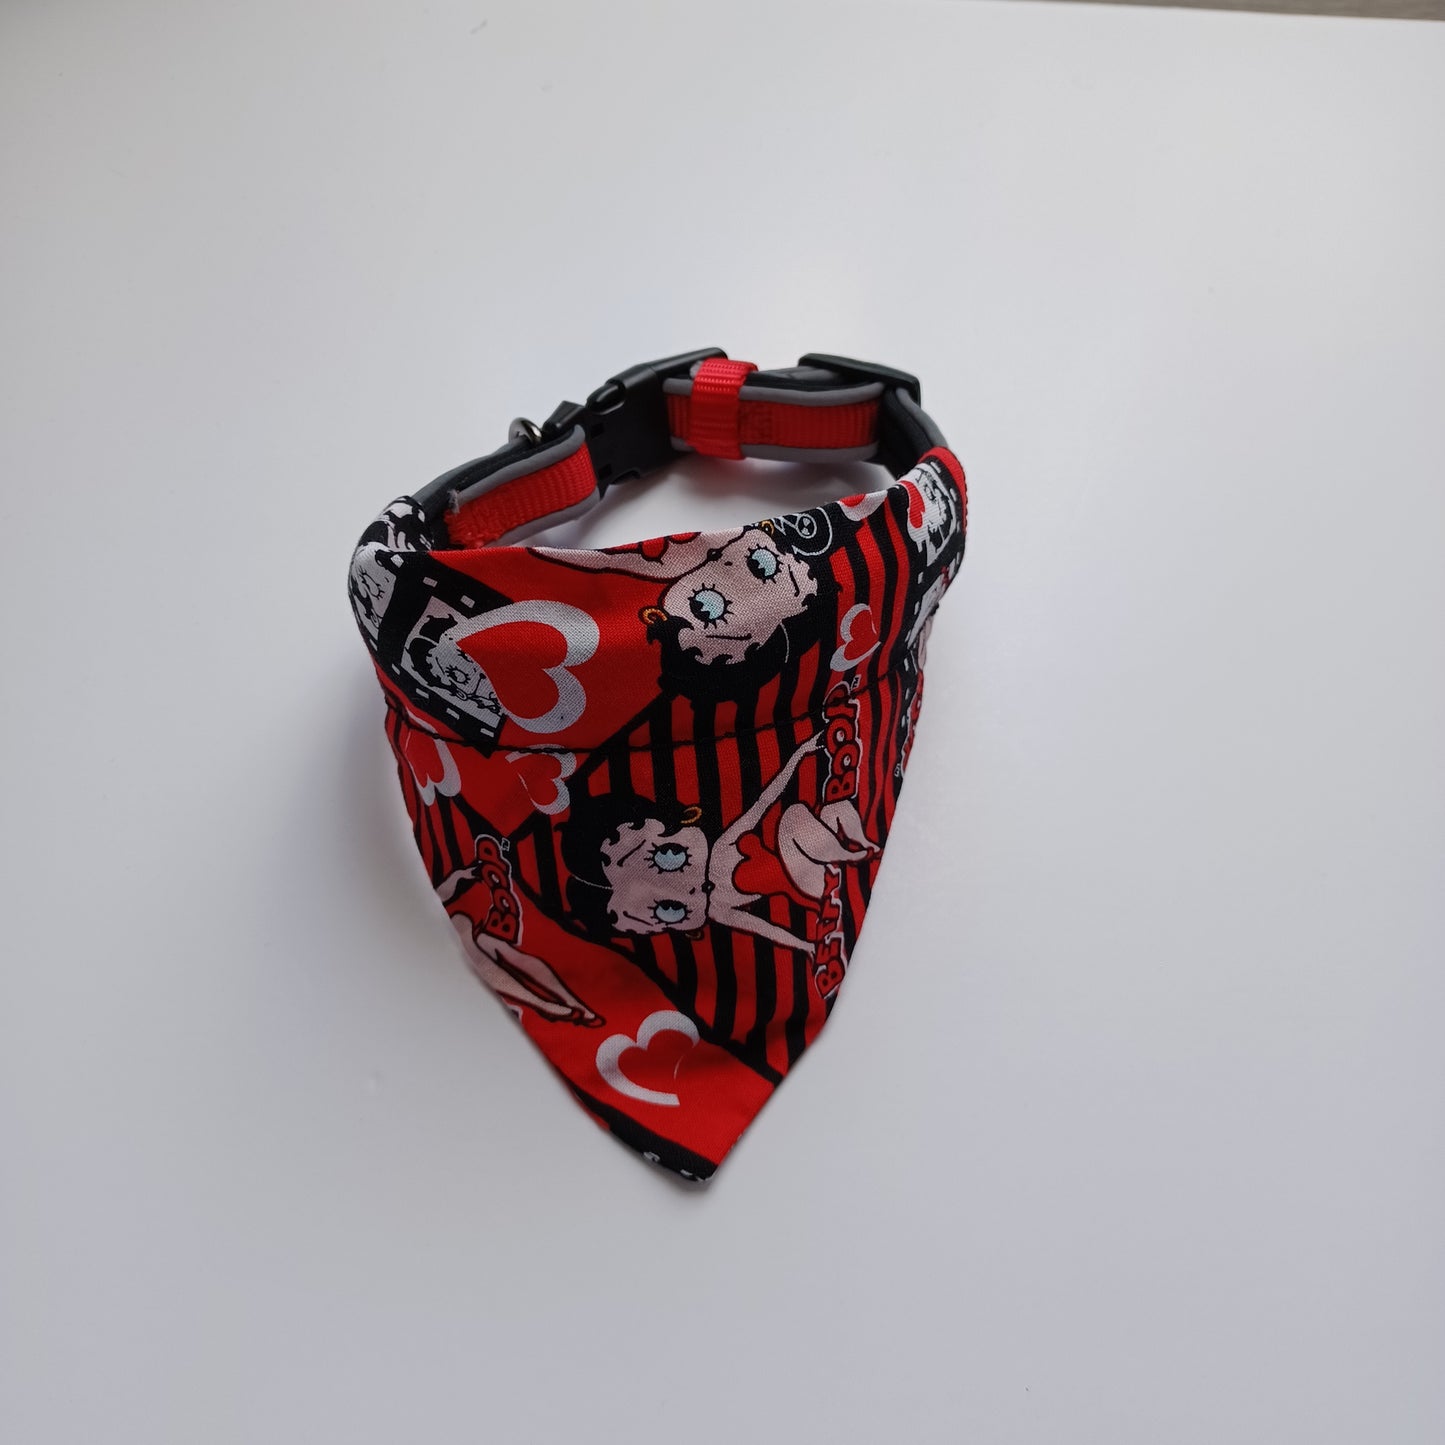 Modèle B-Chat et chien-Foulard par-dessus le collier-Rouge et noir Betty Boop/Bandana over the collar-Red and black Betty Boop